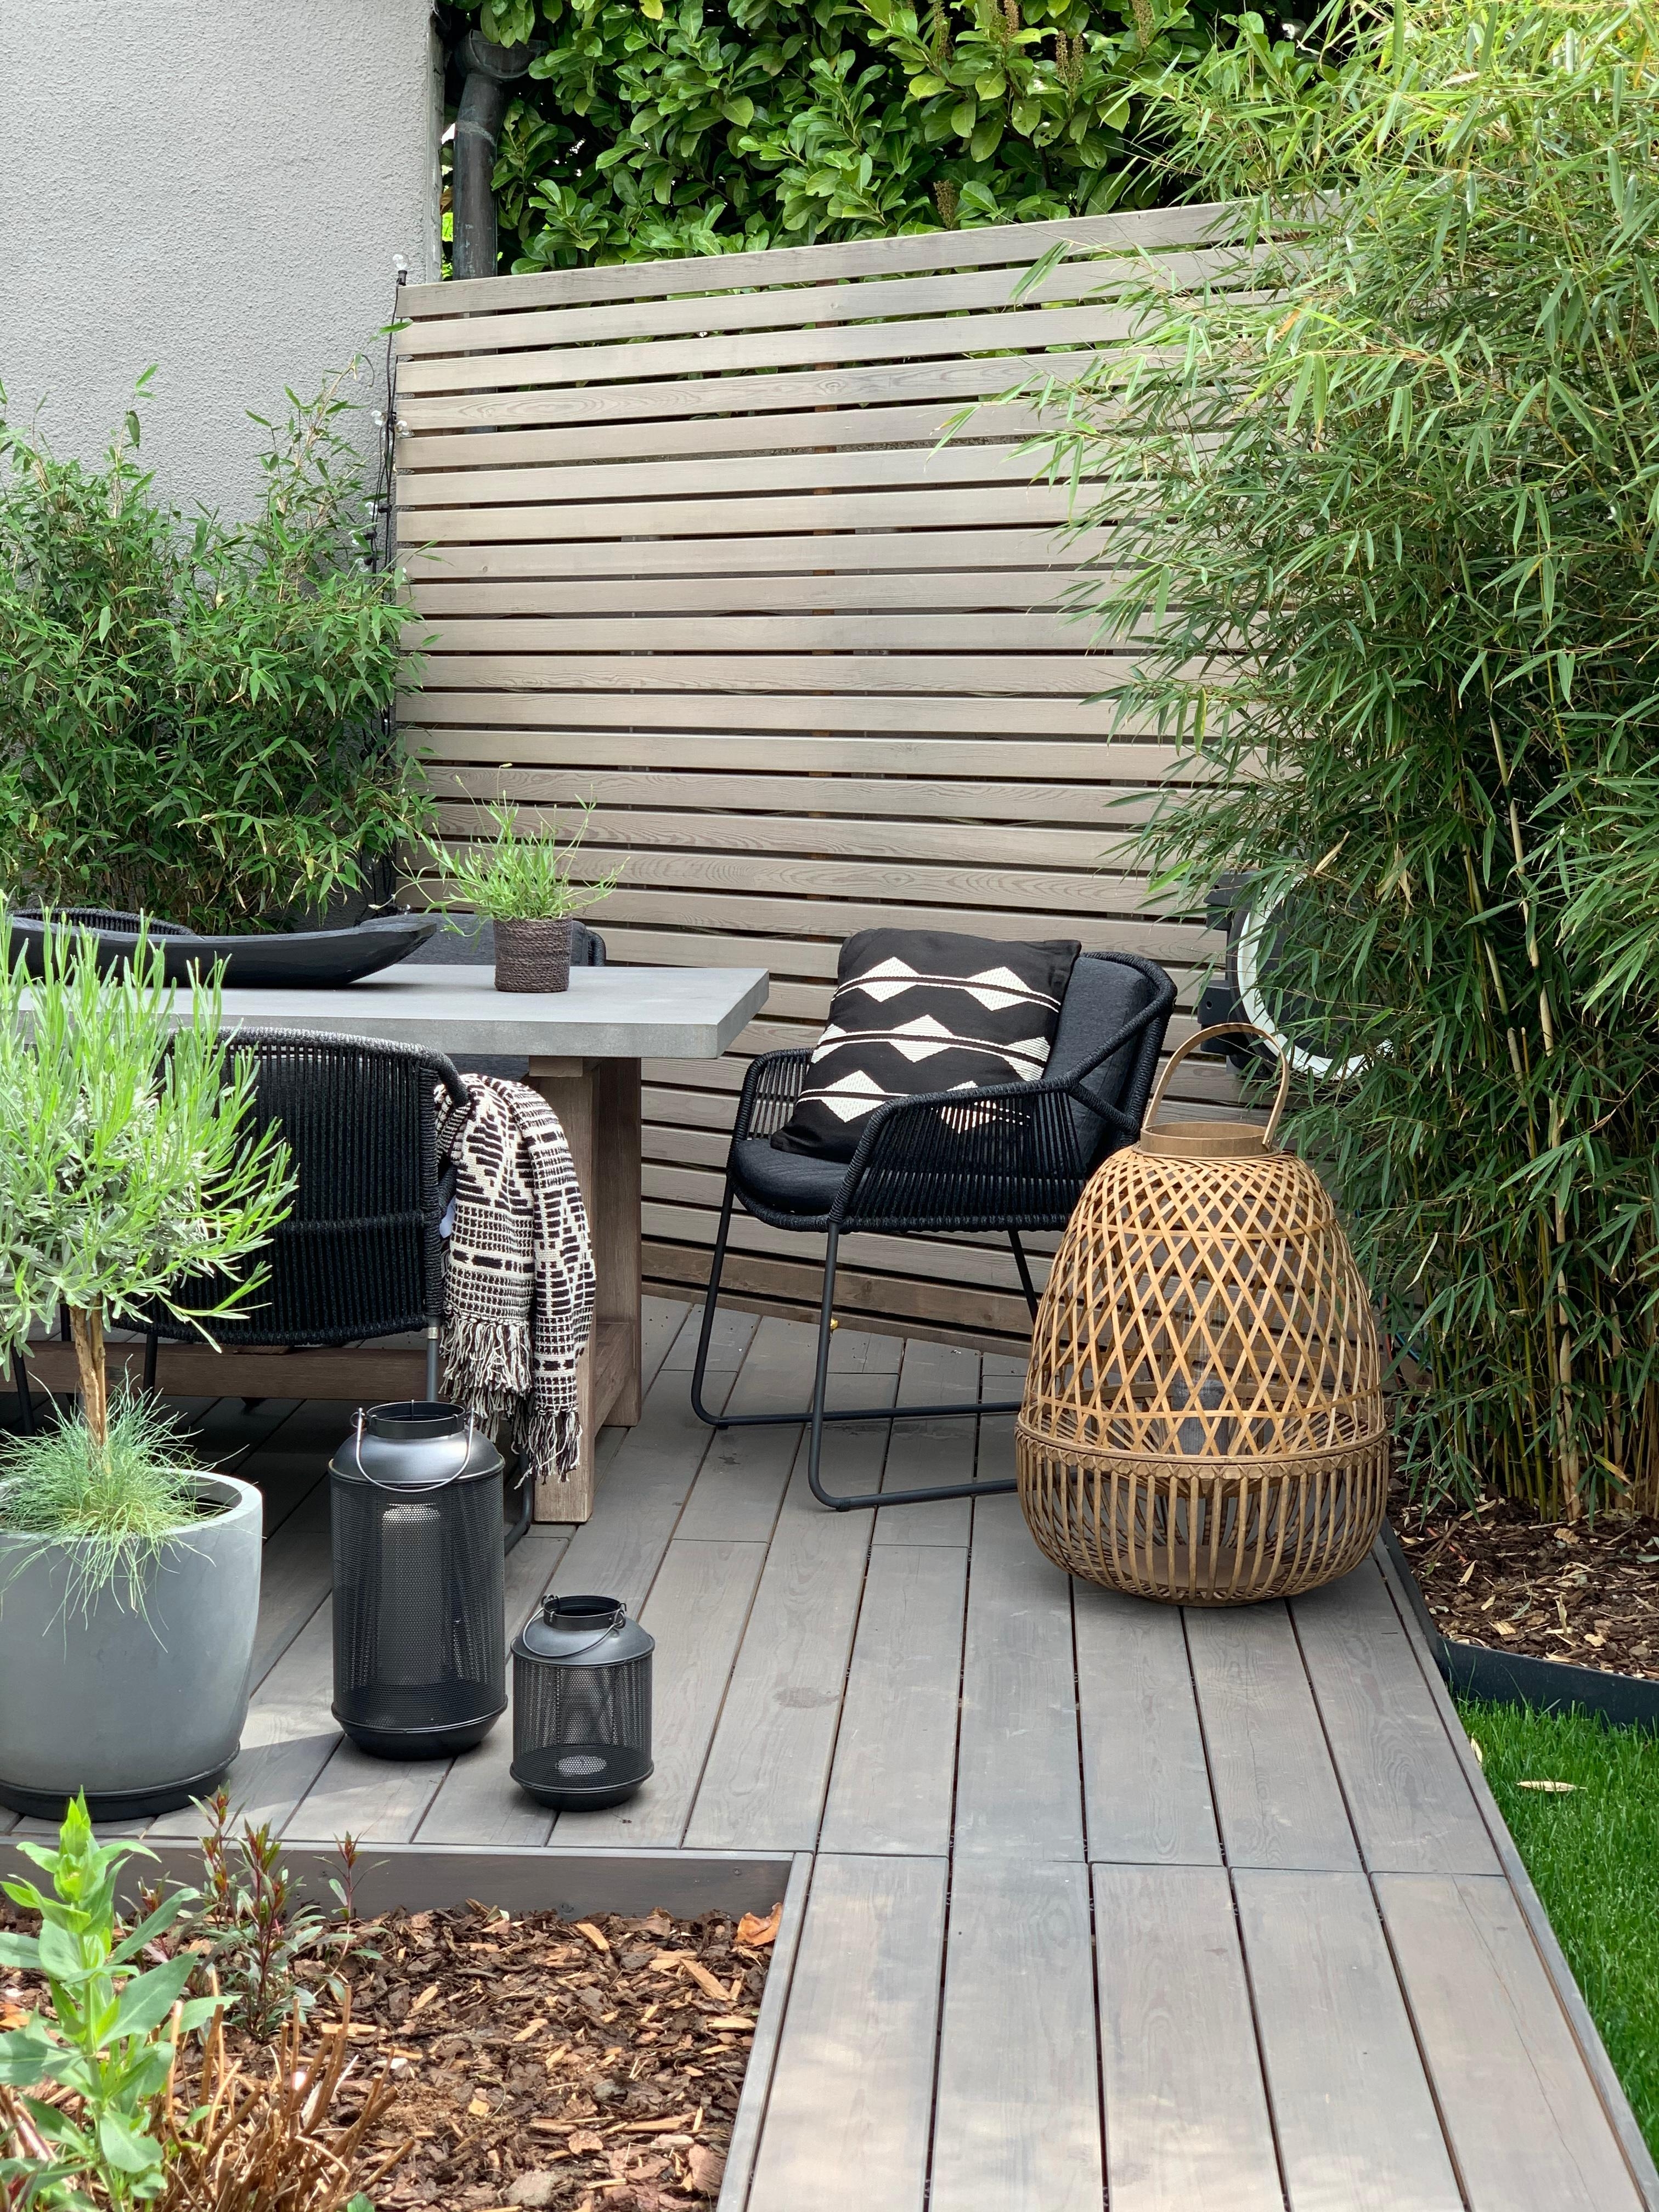 Cozy Gartenzeit...
#garten #sommer #terrasse #terrassenmöbel #holzterrasse #lounge #gartenmöbel #gartenzaun #bambus